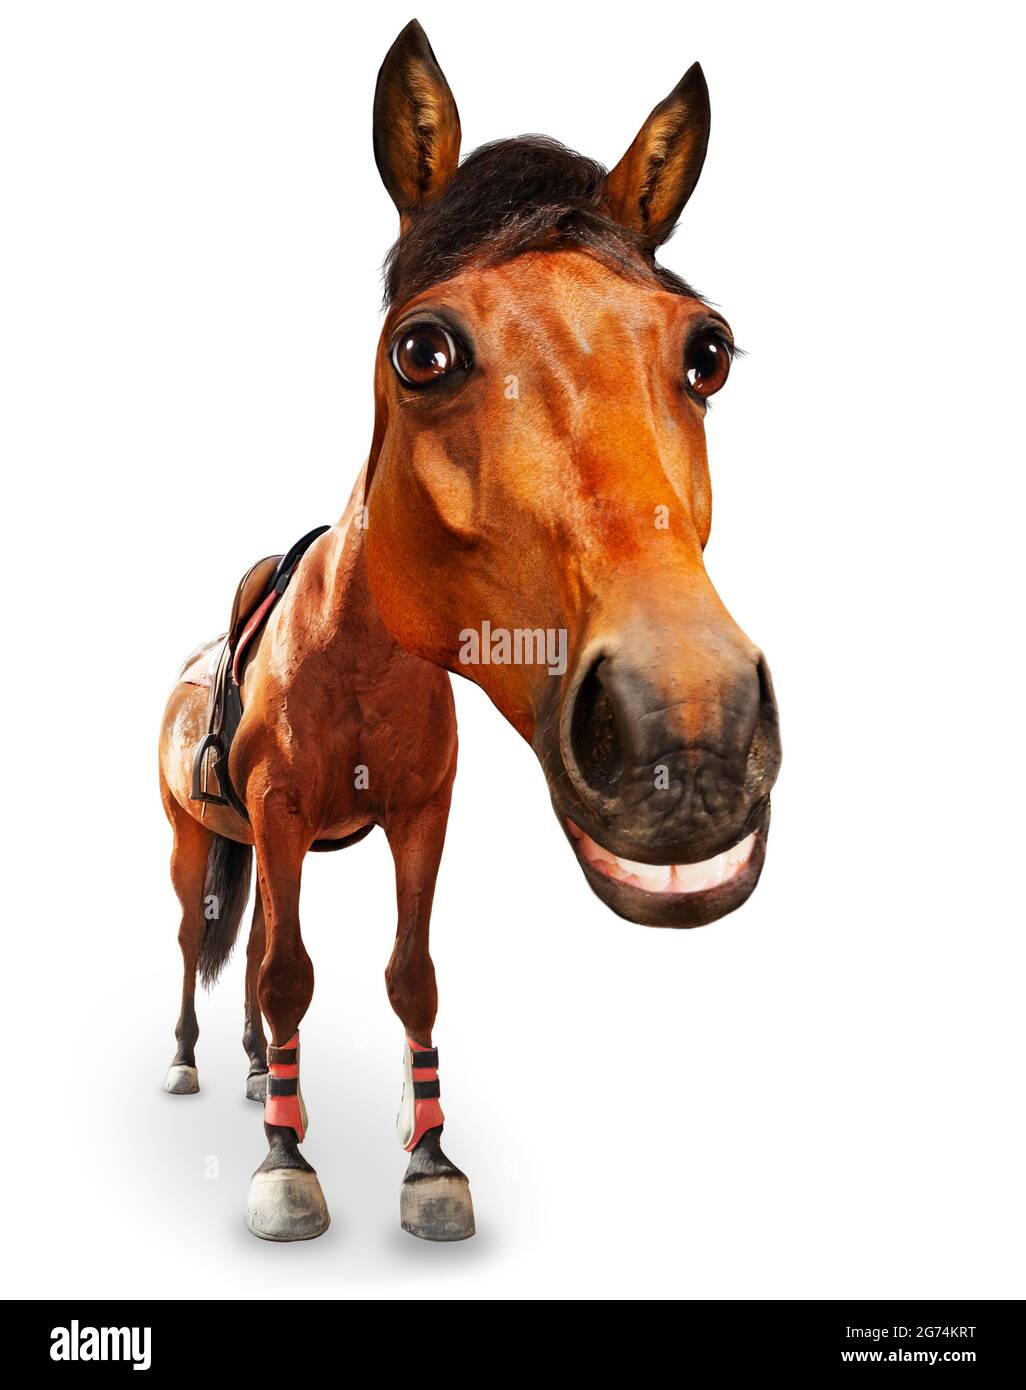 Cartone animato come immagine di testa di cavallo e grande sorriso Foto Stock